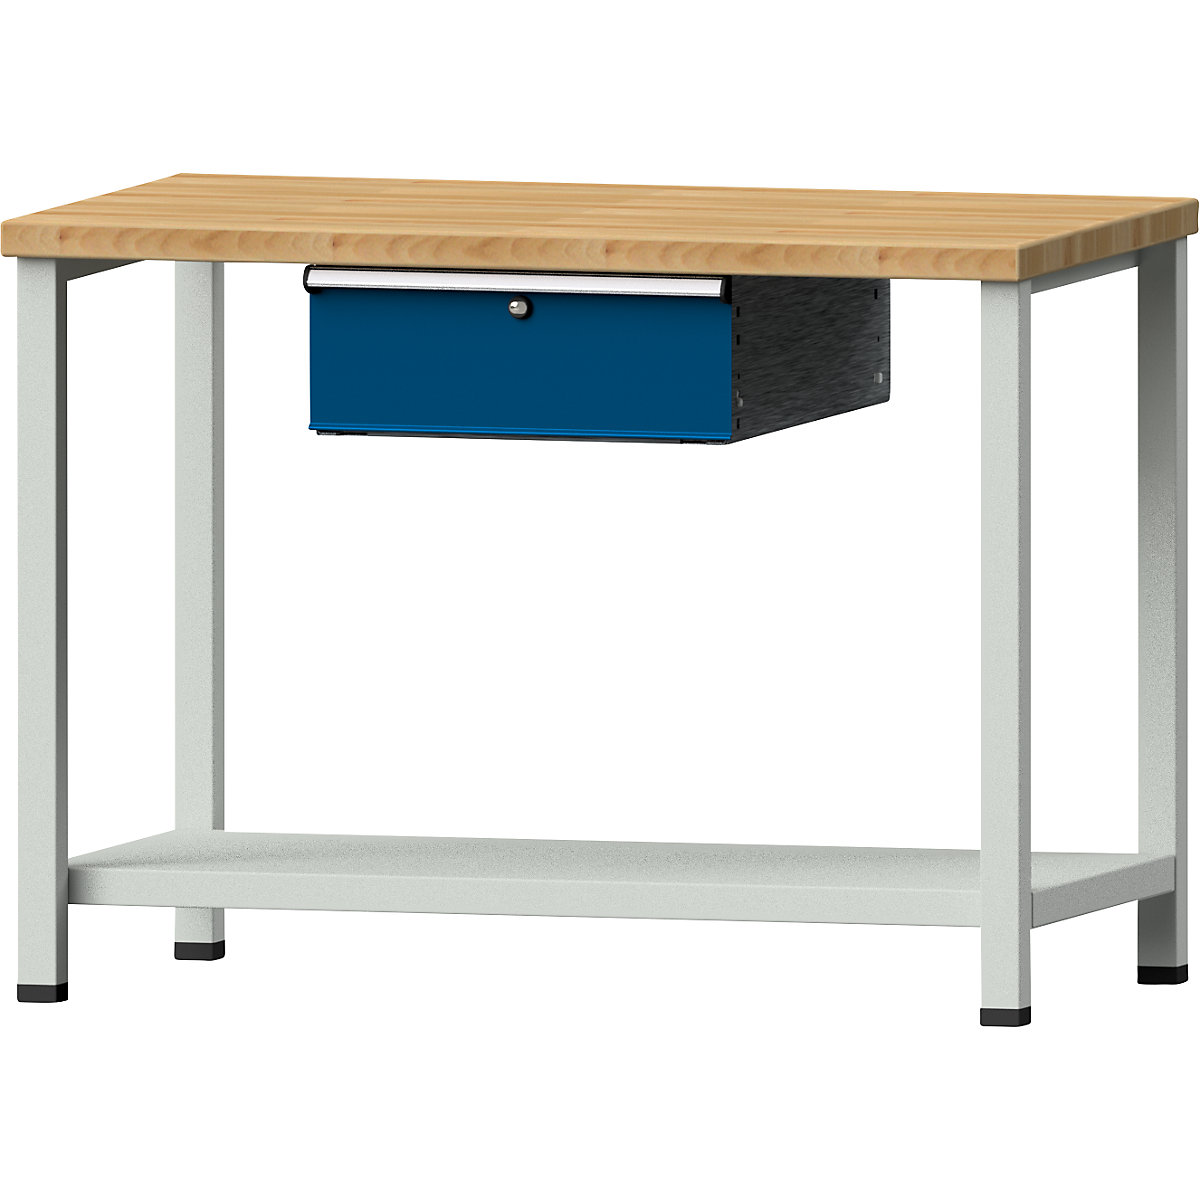 Kompaktowy stół warsztatowy – ANKE